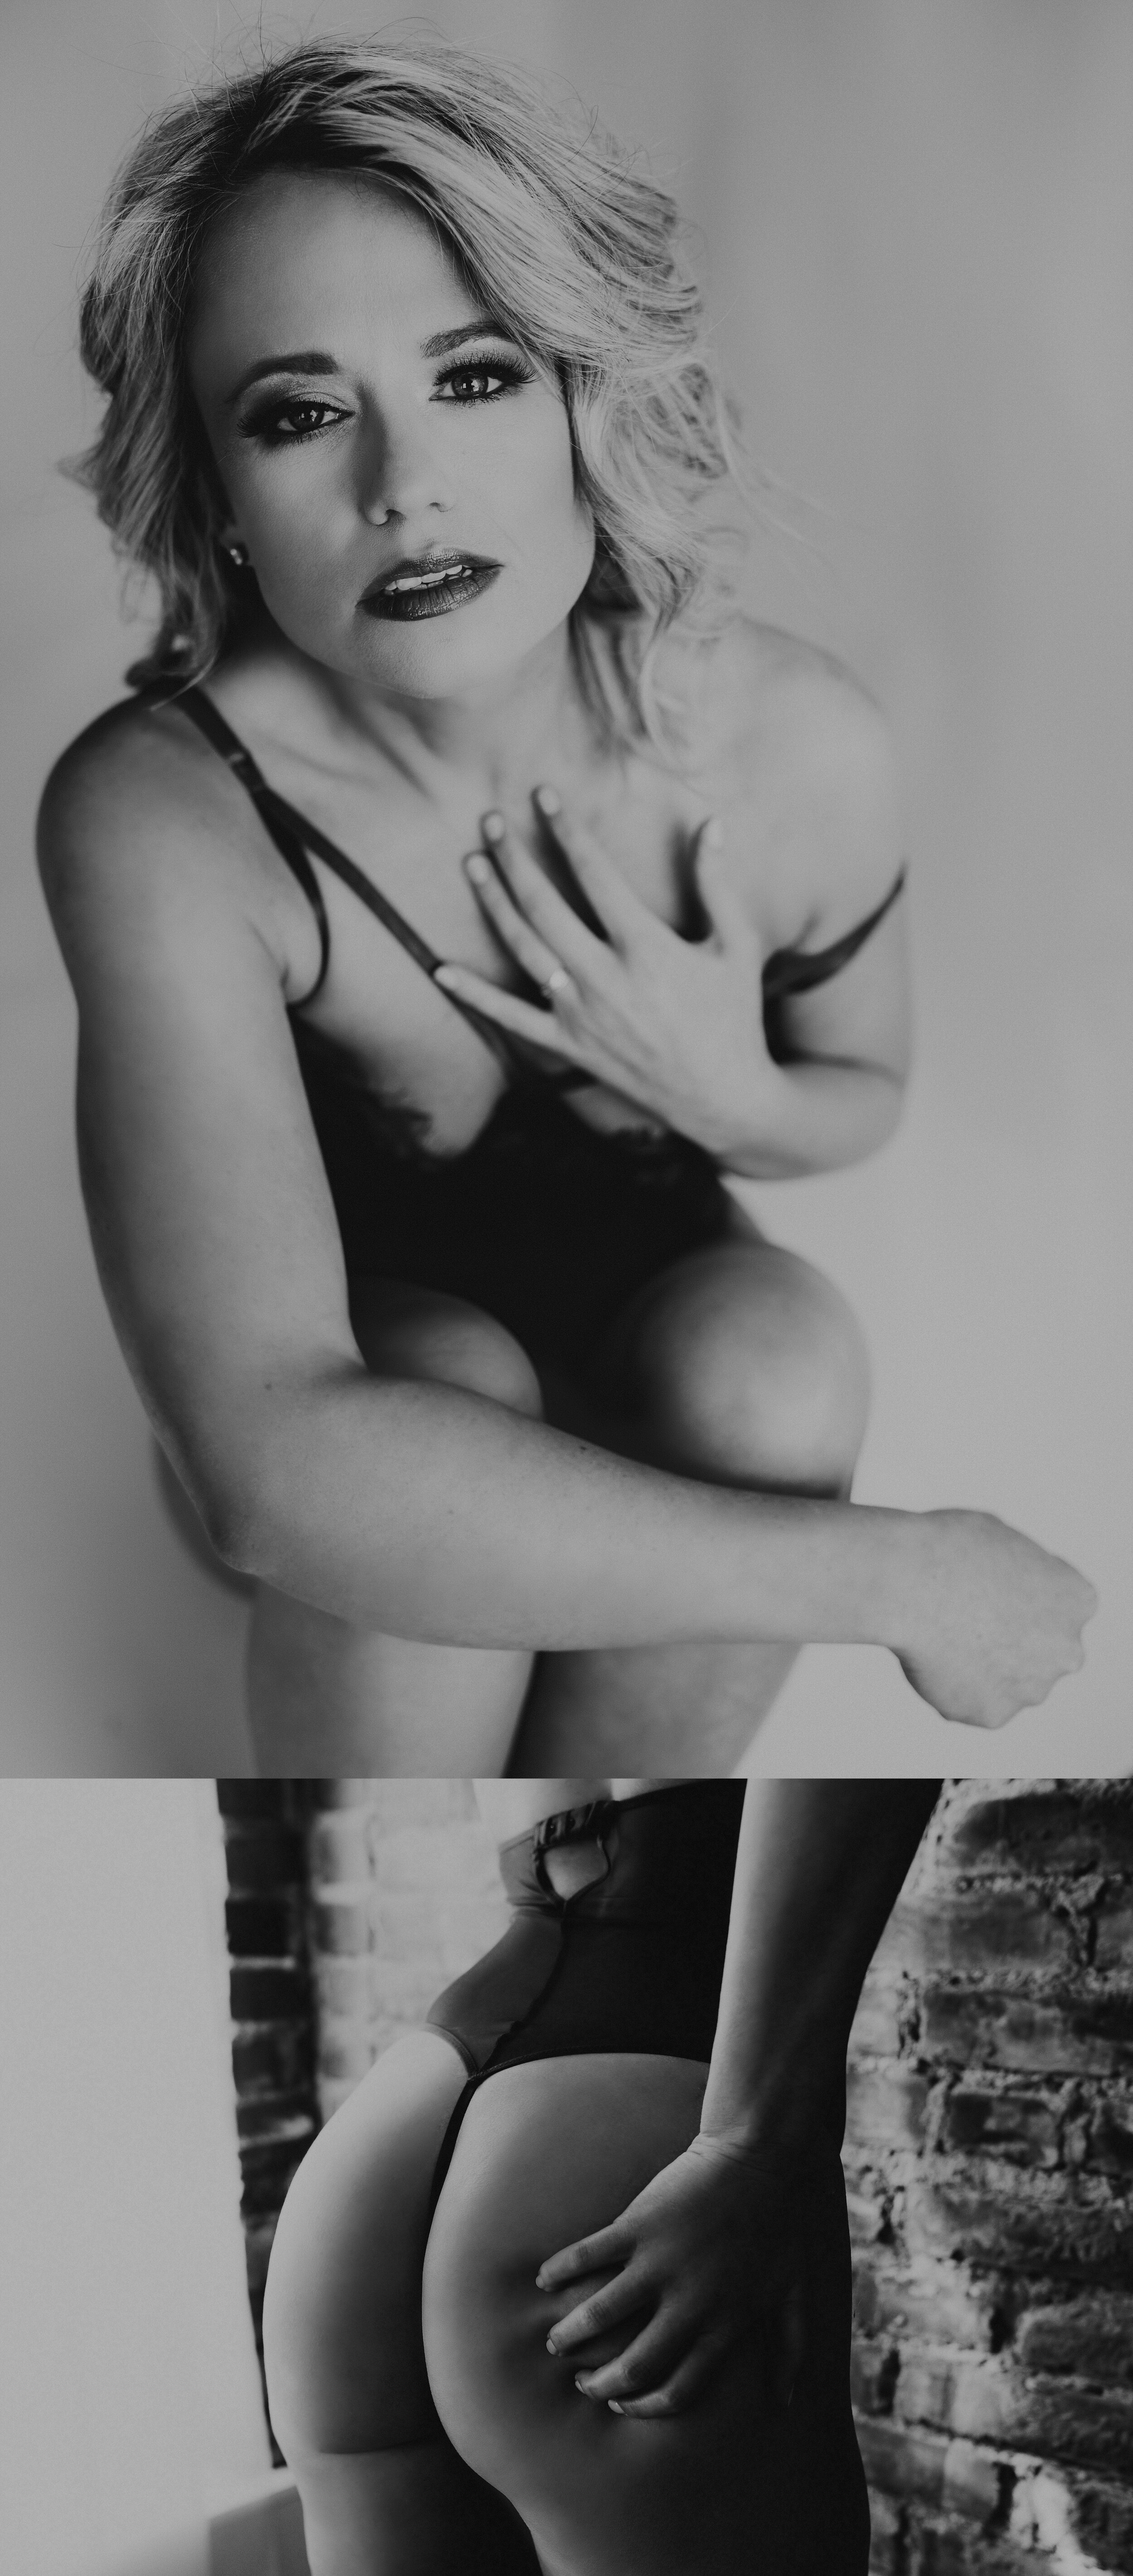 Kansas+City+Boudoir+Photography+Kansas+City+Portrait+Photography-boudoir-nude+boudoir-nude+portraits (6).jpeg